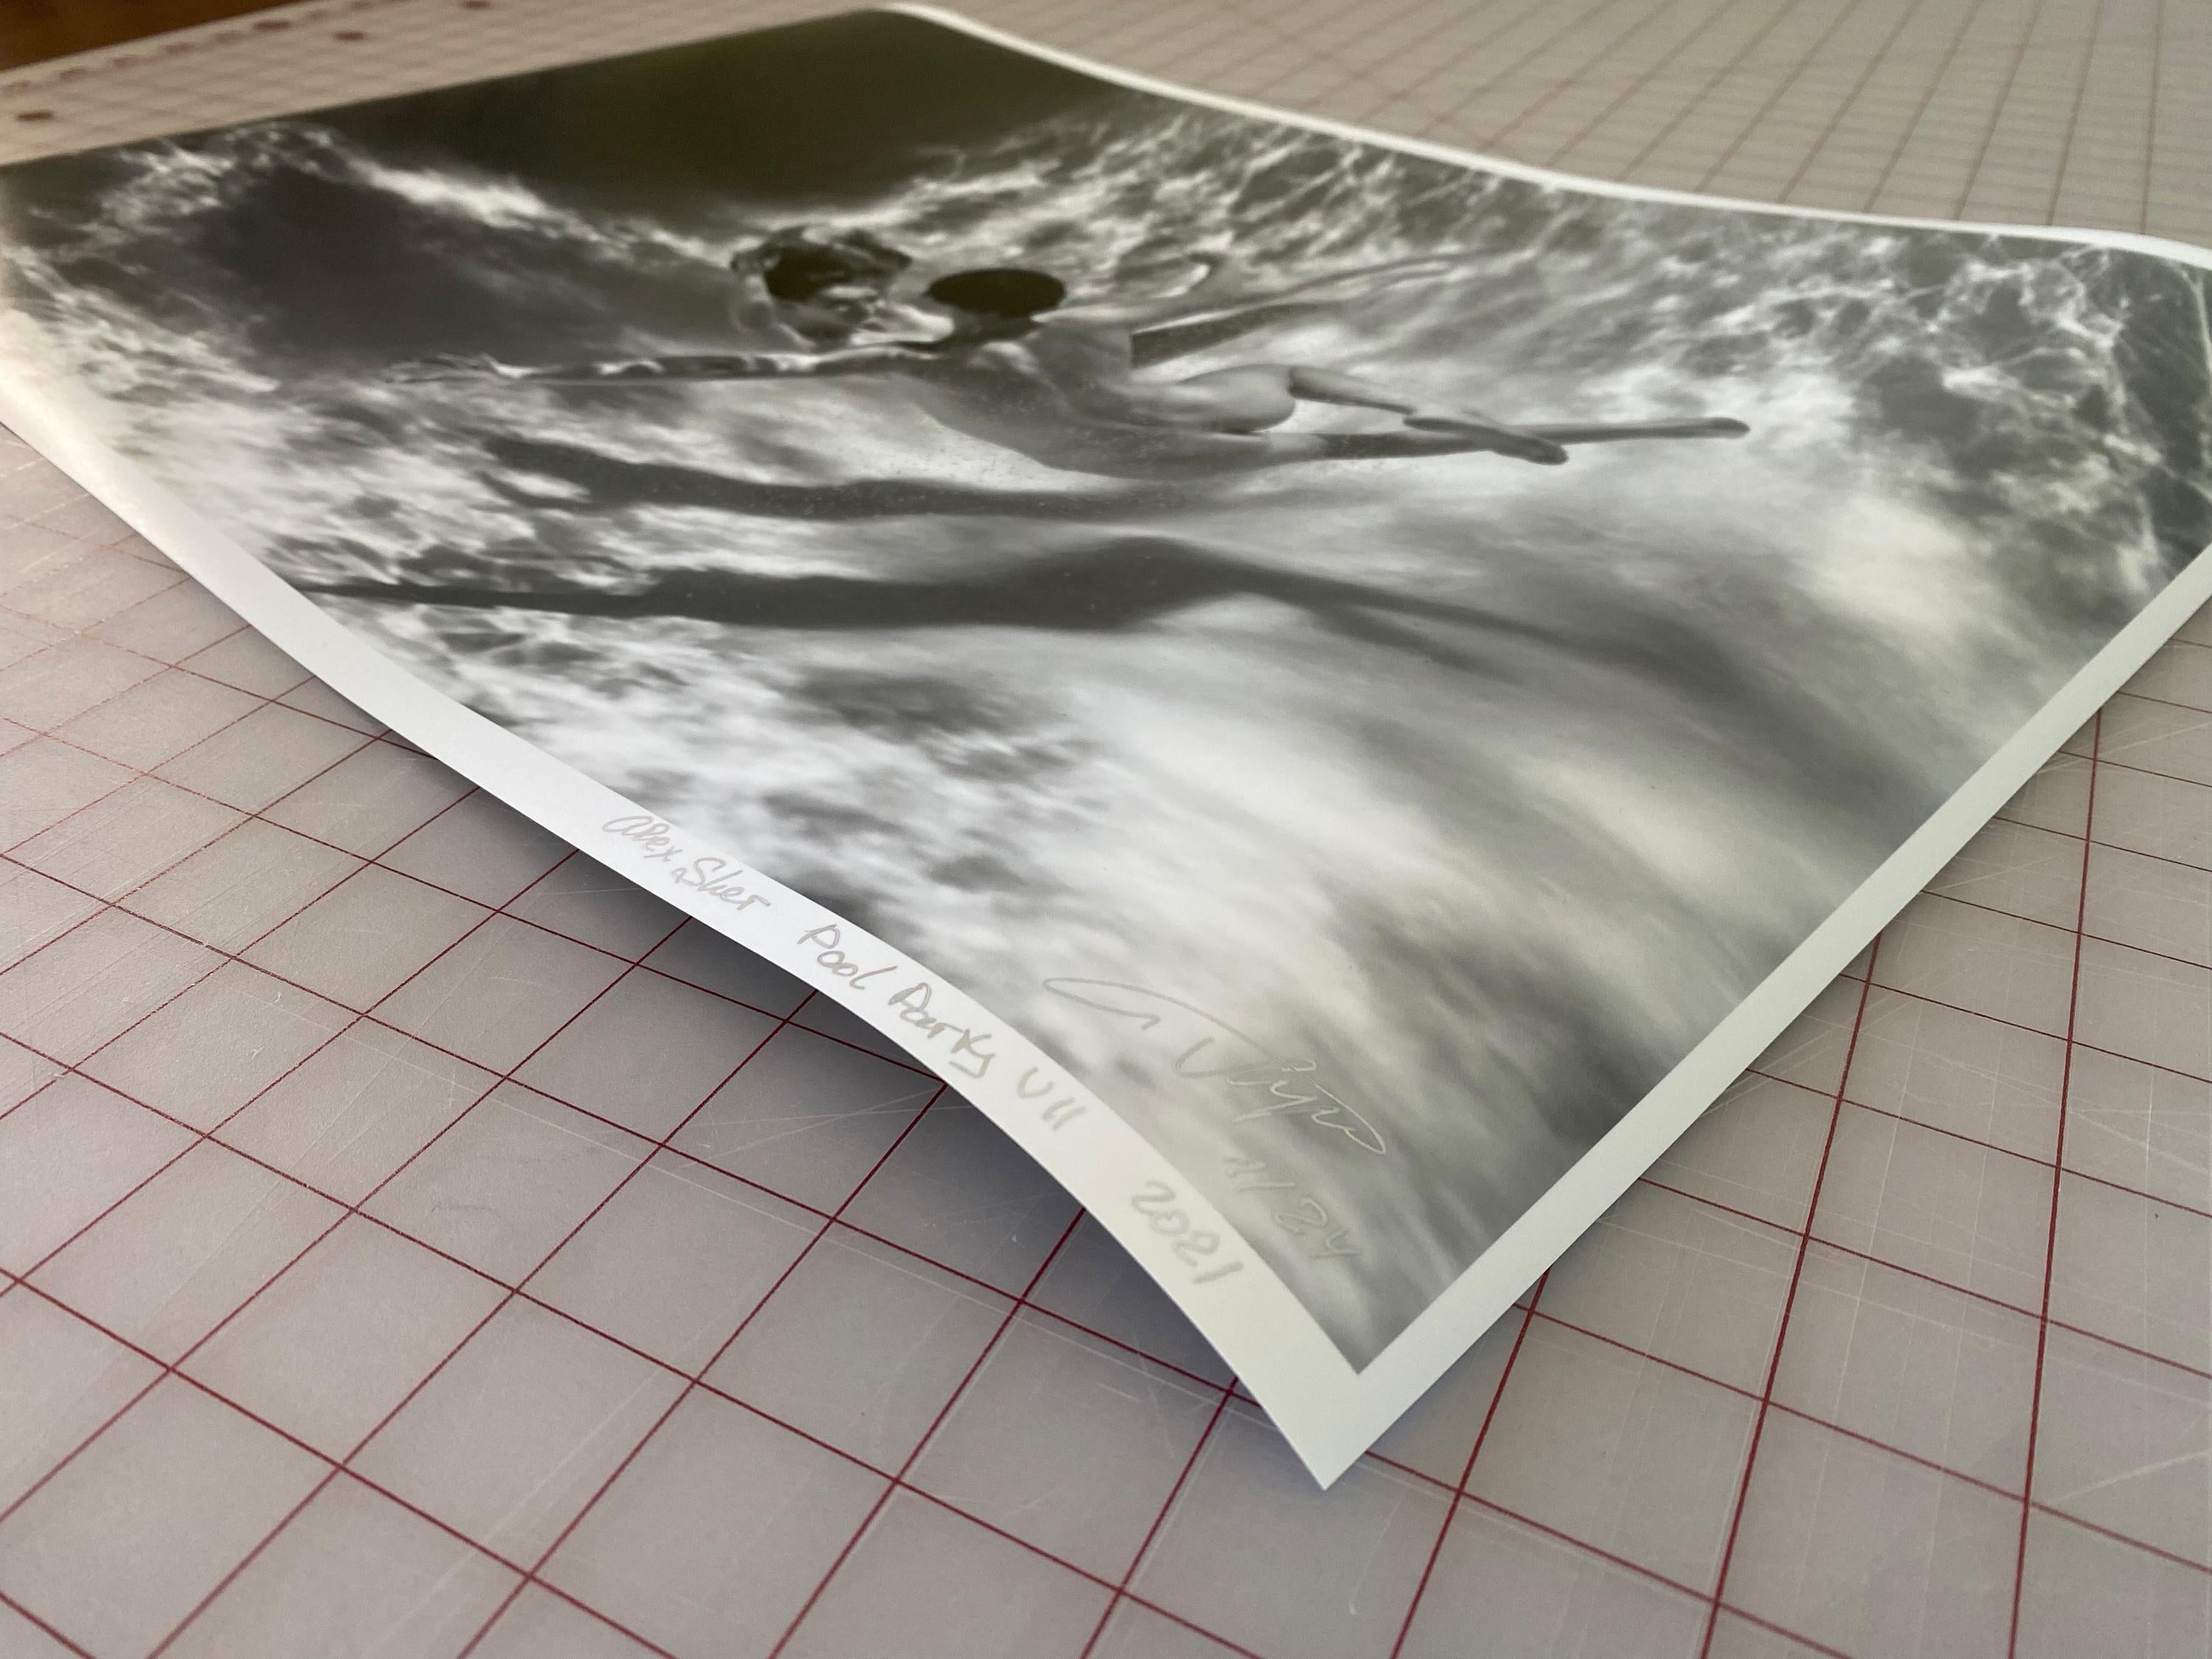 Eine Unterwasser-Schwarz-Weiß-Fotografie von jungen Frauen, die nackt in einem Pool tauchen. 

Original-Pigmentdruck in Galeriequalität auf Archivpapier, vom Künstler signiert.
Limitierte Auflage von 24 Stück
Papierformat: 18x24